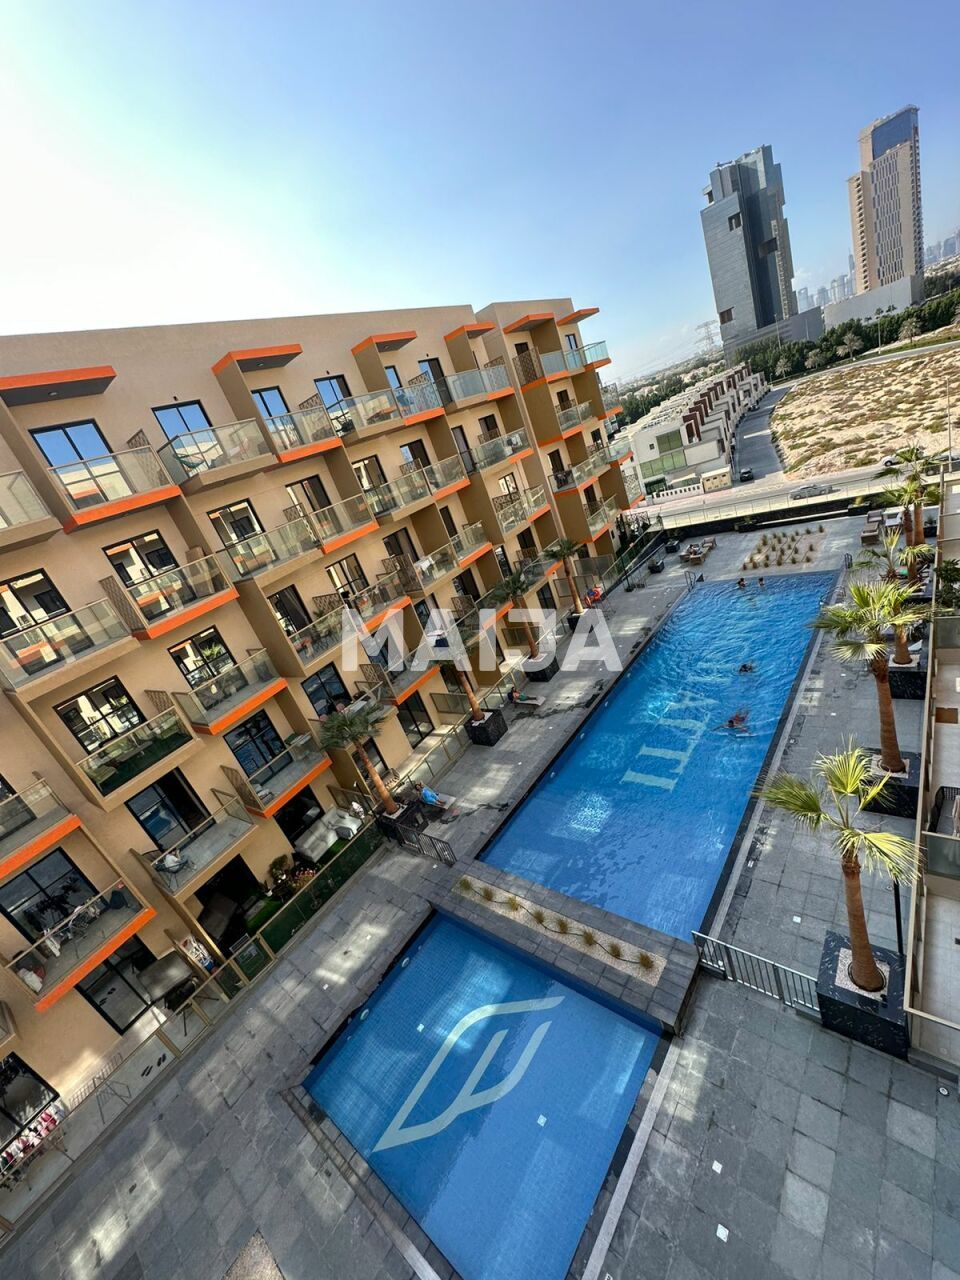 Apartment in Dubai, UAE, 94 sq.m - picture 1